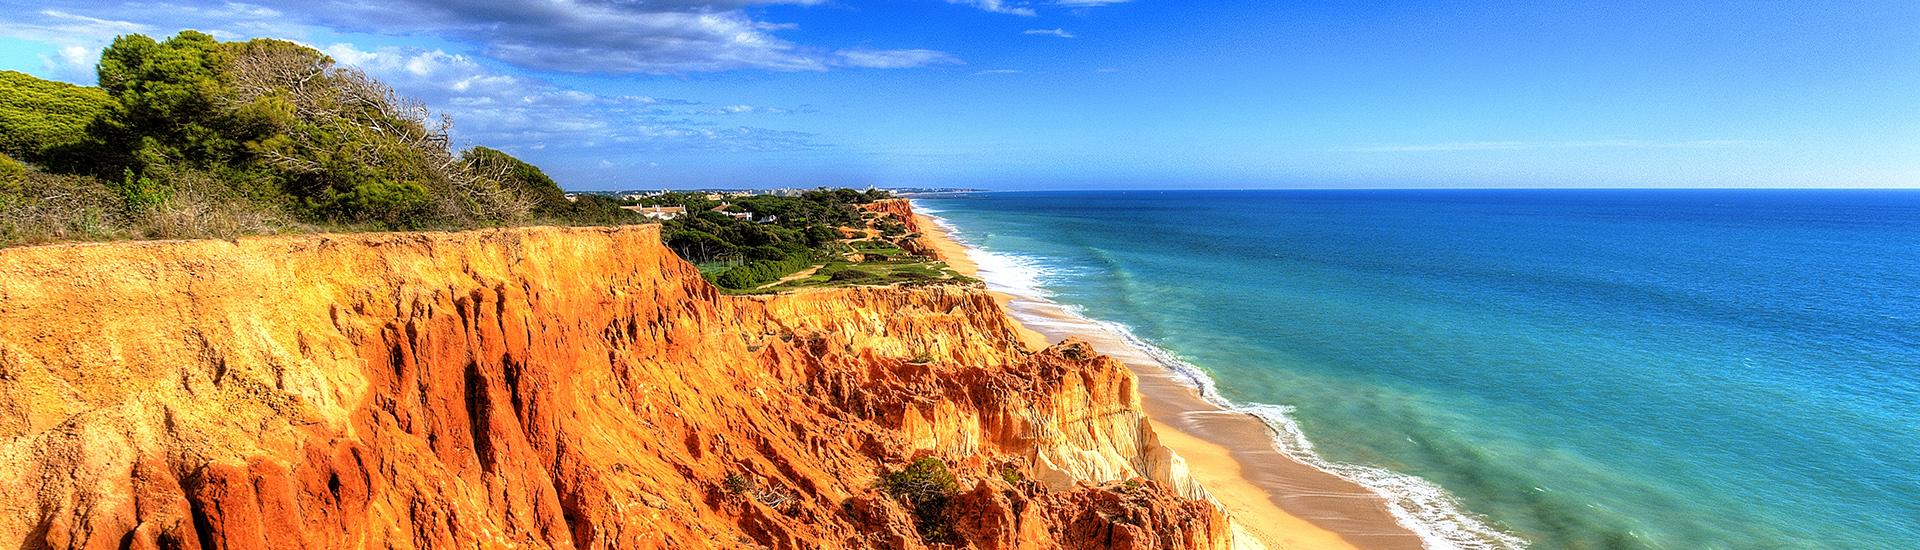 Algarve - słoneczny balkon Europy